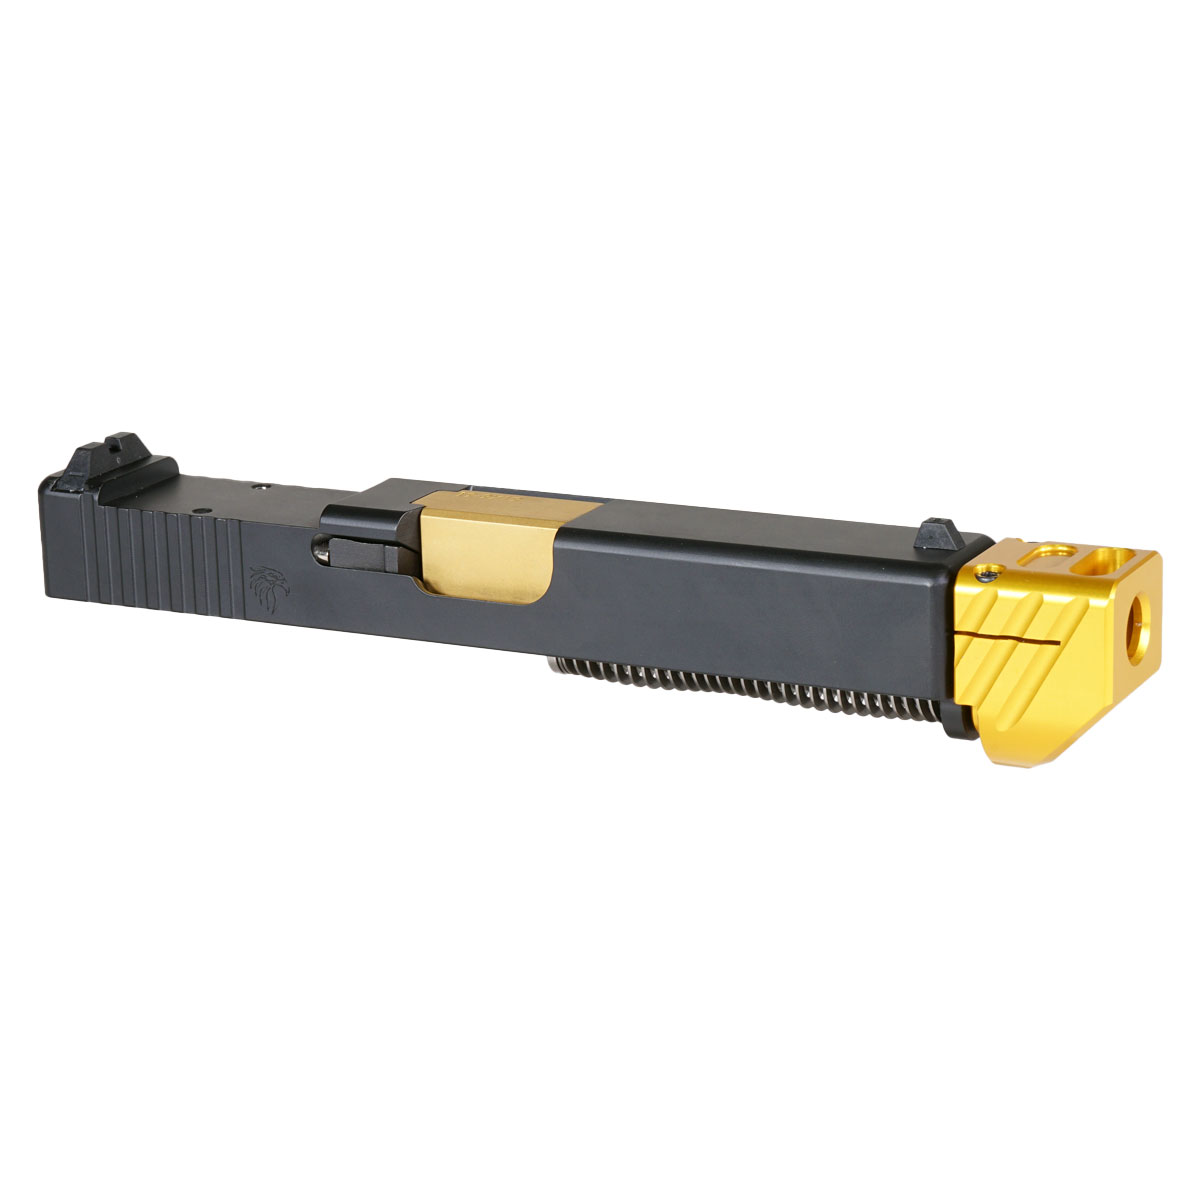 DDS 'Skyflash V2 w/ Gold Compensator' 9mm Complete Slide Kit - Glock 19 Gen 1-3 Compatible